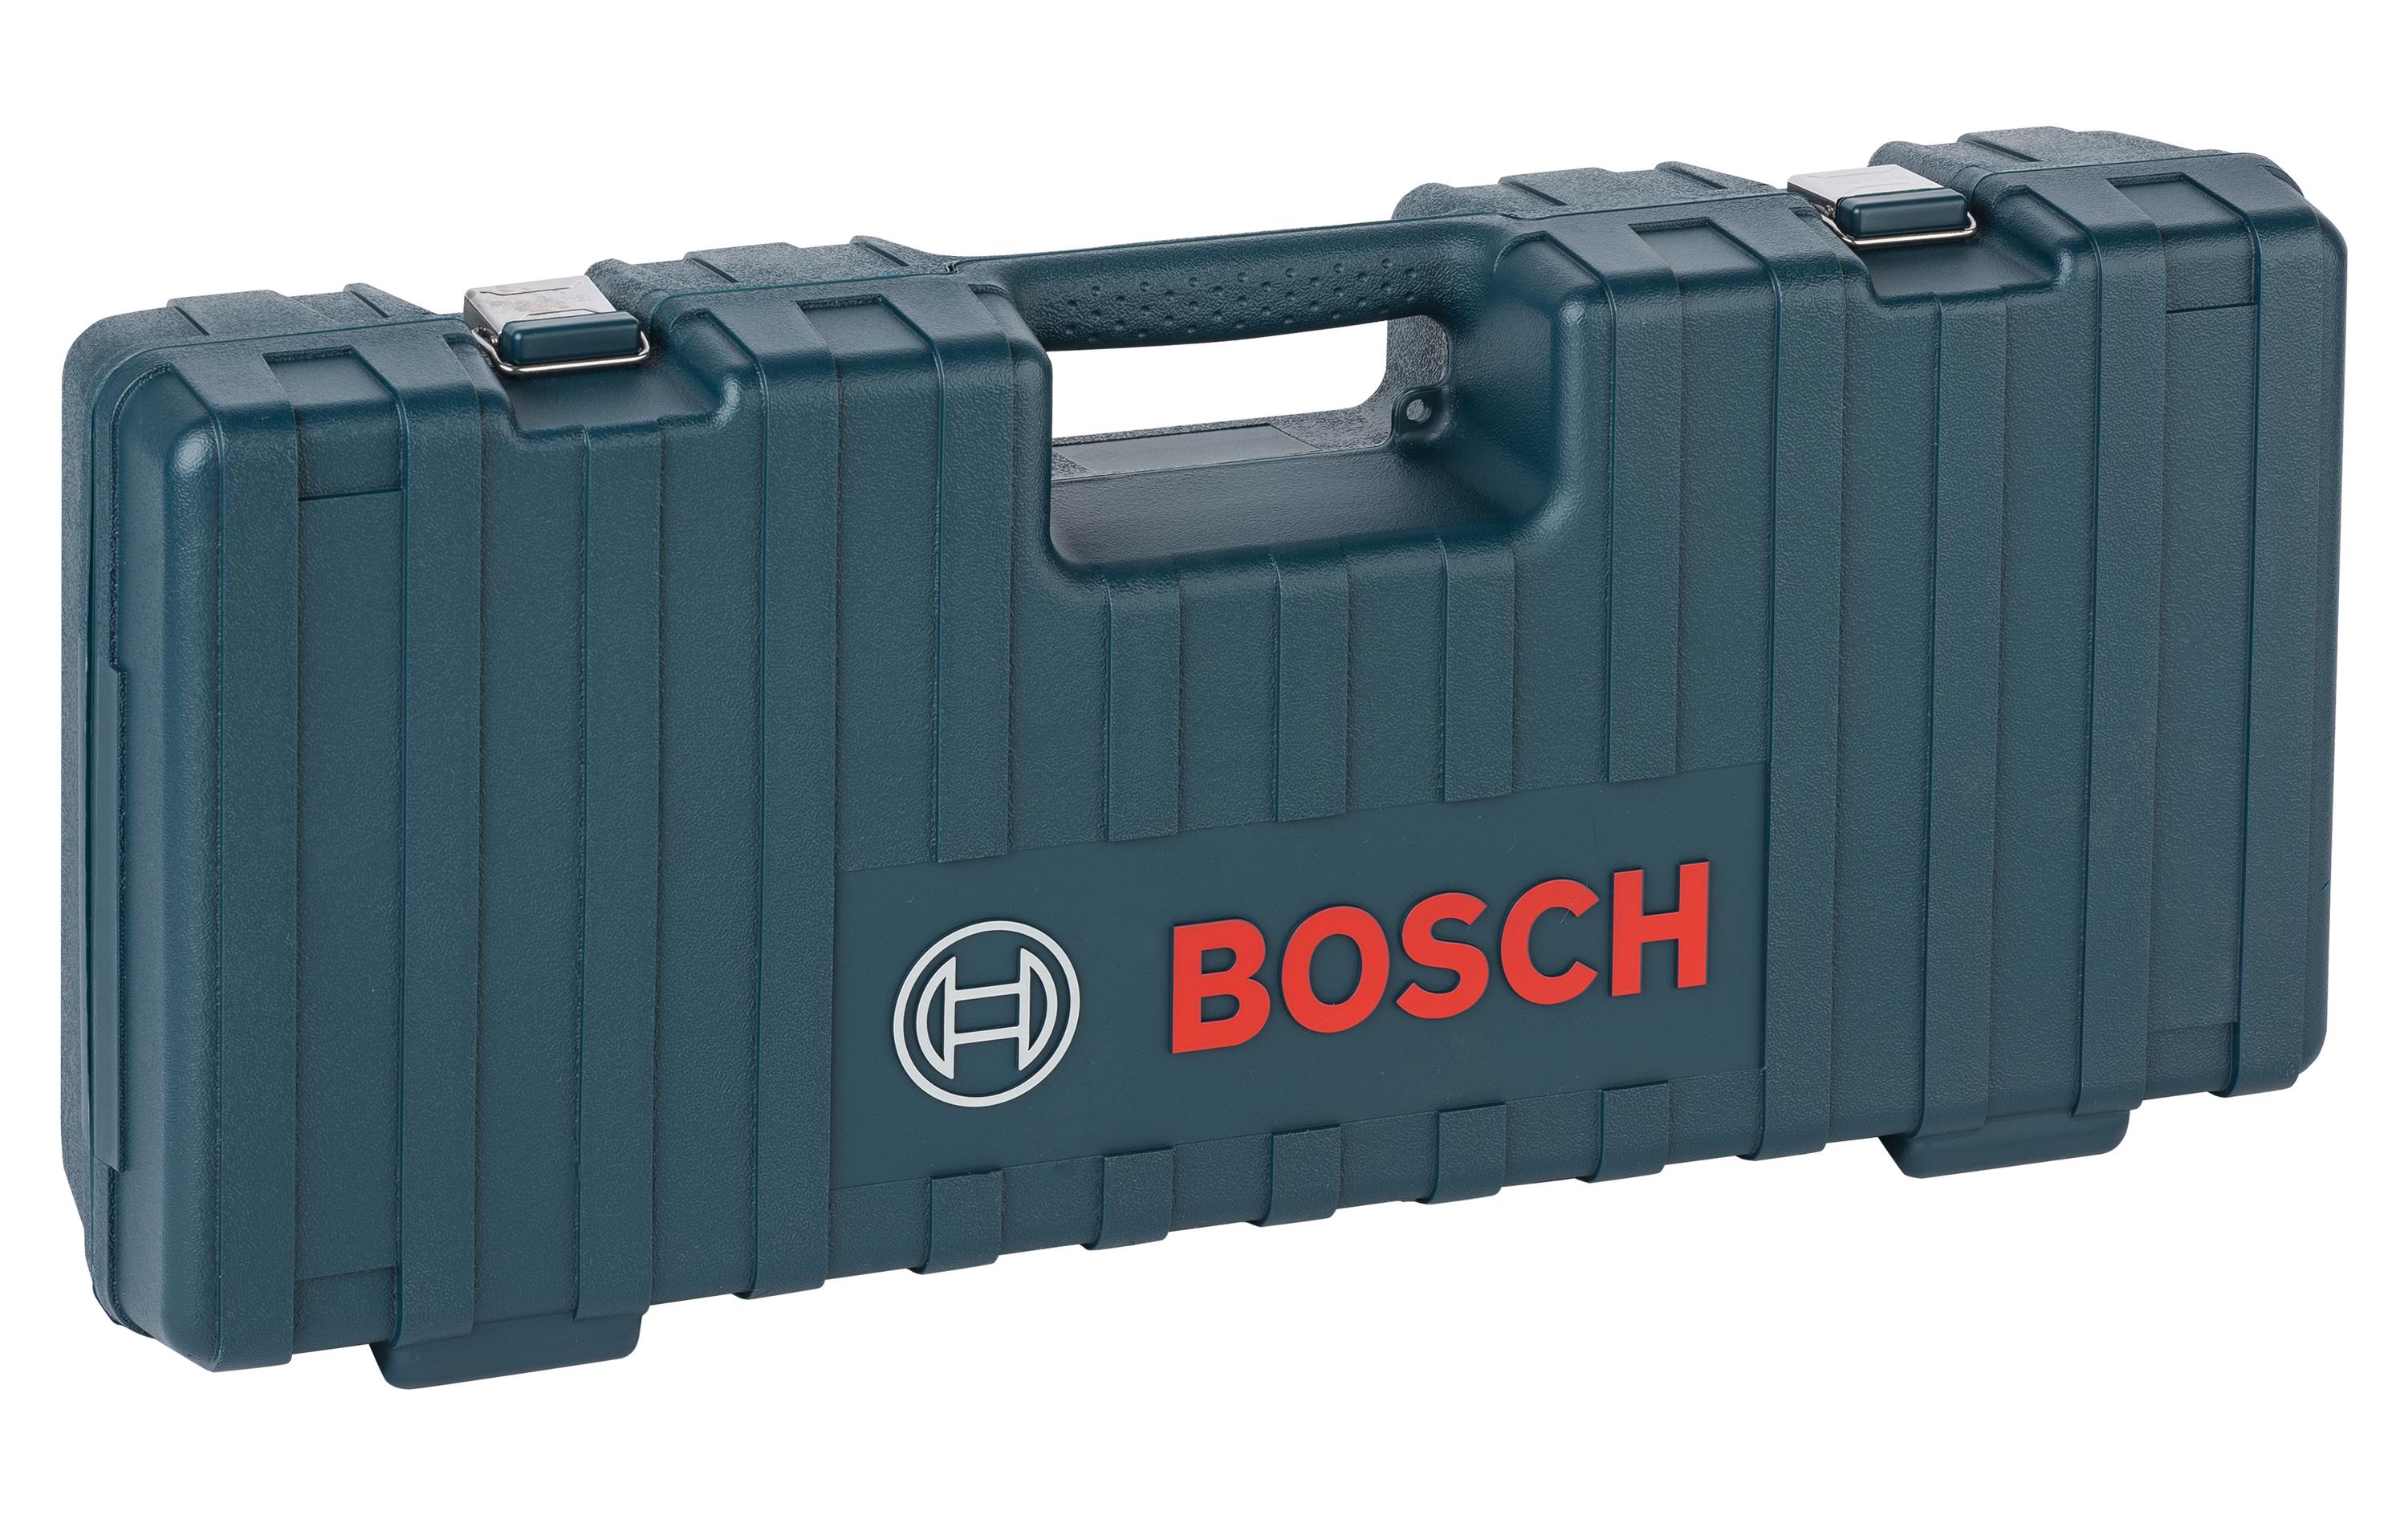 Bosch Professional Kunststoffkoffer 72.1 cm x 31.7 cm x 17 cm